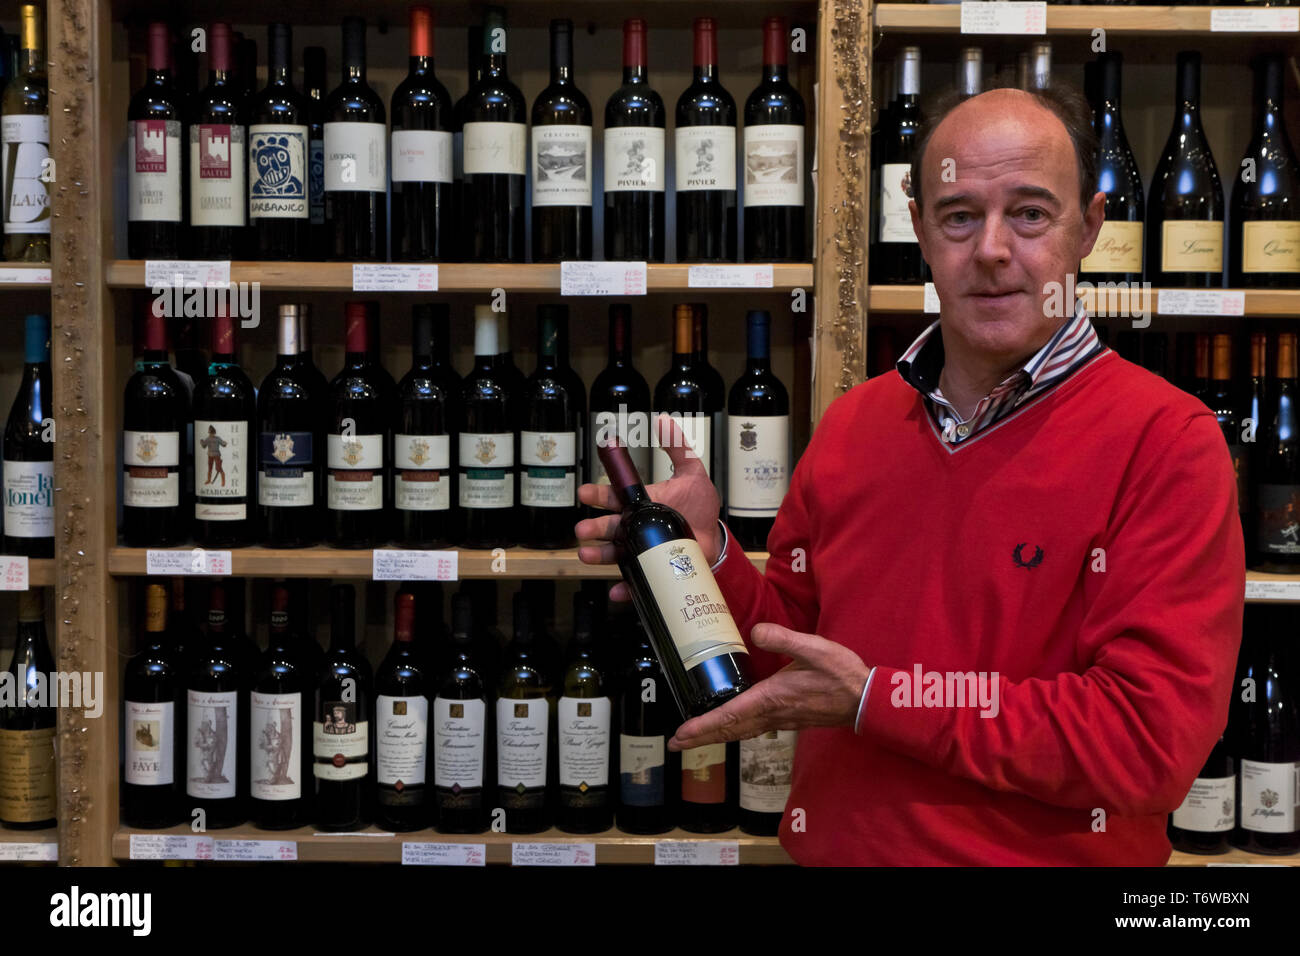 Rovereto, drogheria Giuseppe Micheli: Gli scaffali con le bottiglie di Vini tipici del Trentino. Il proprietario Mostra una bottiglia di San Leonardo. Stockfoto